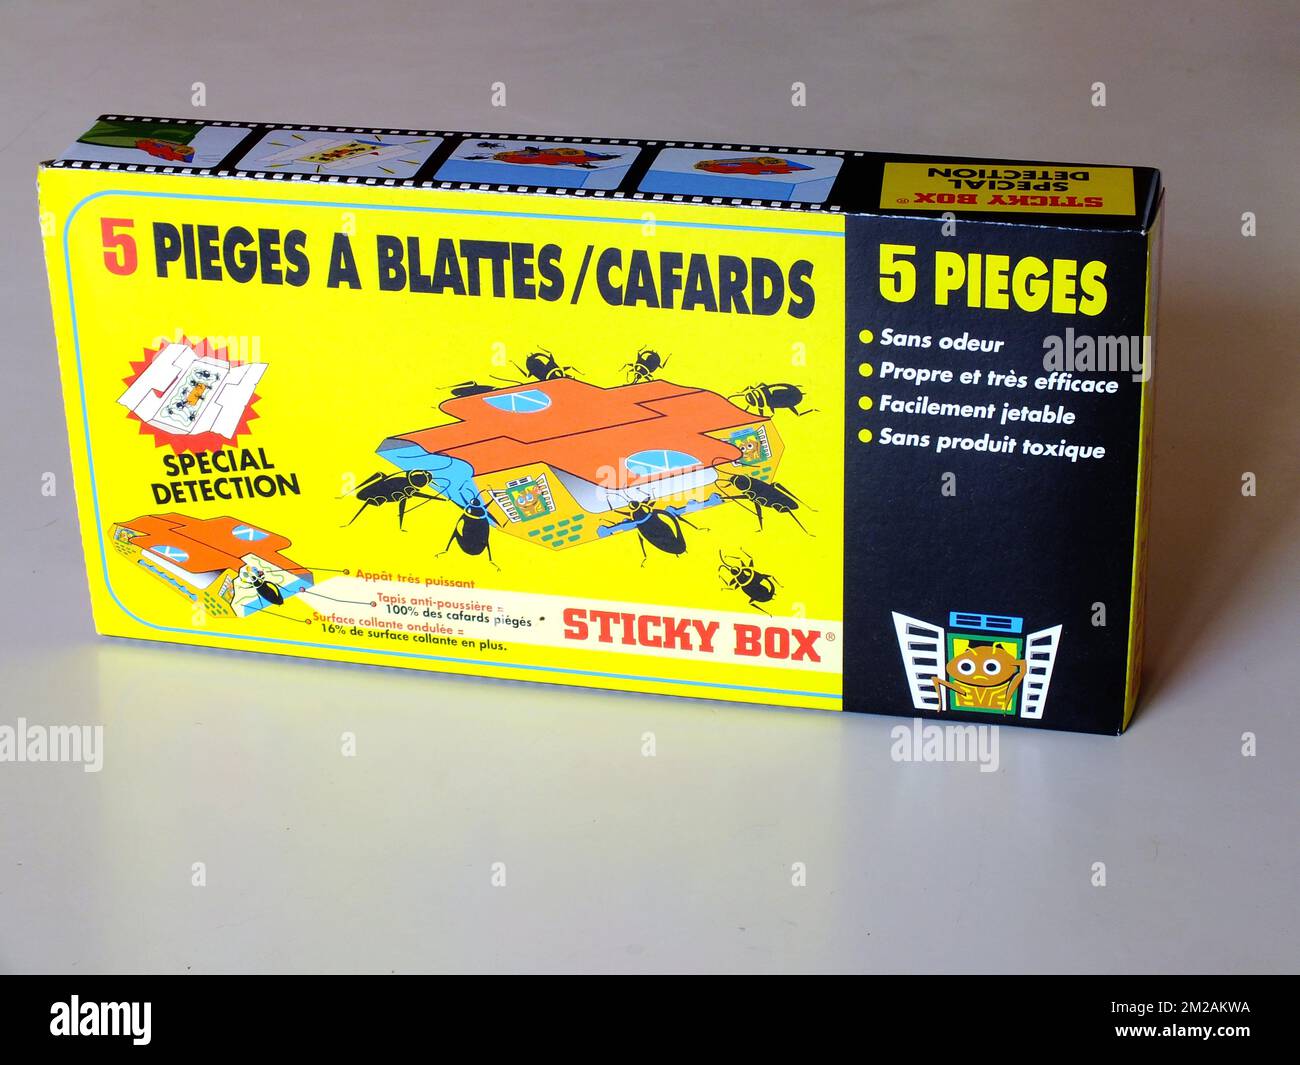 Piège à glu cafards/blattes Sticky Box